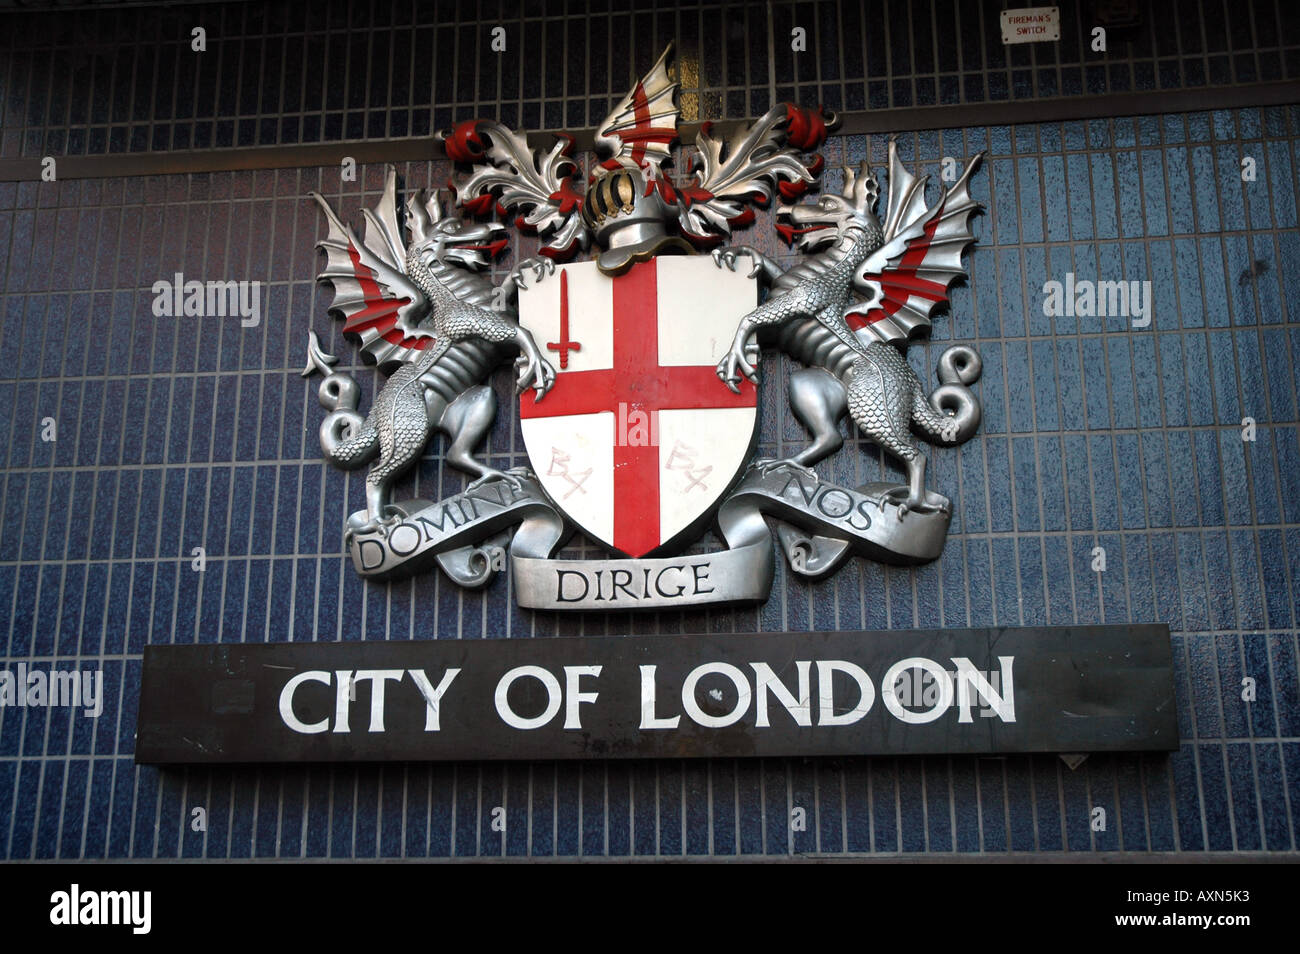 Ville de London district signe avec devise latine domine dirige nos (Seigneur, guide-nous), London, UK Banque D'Images